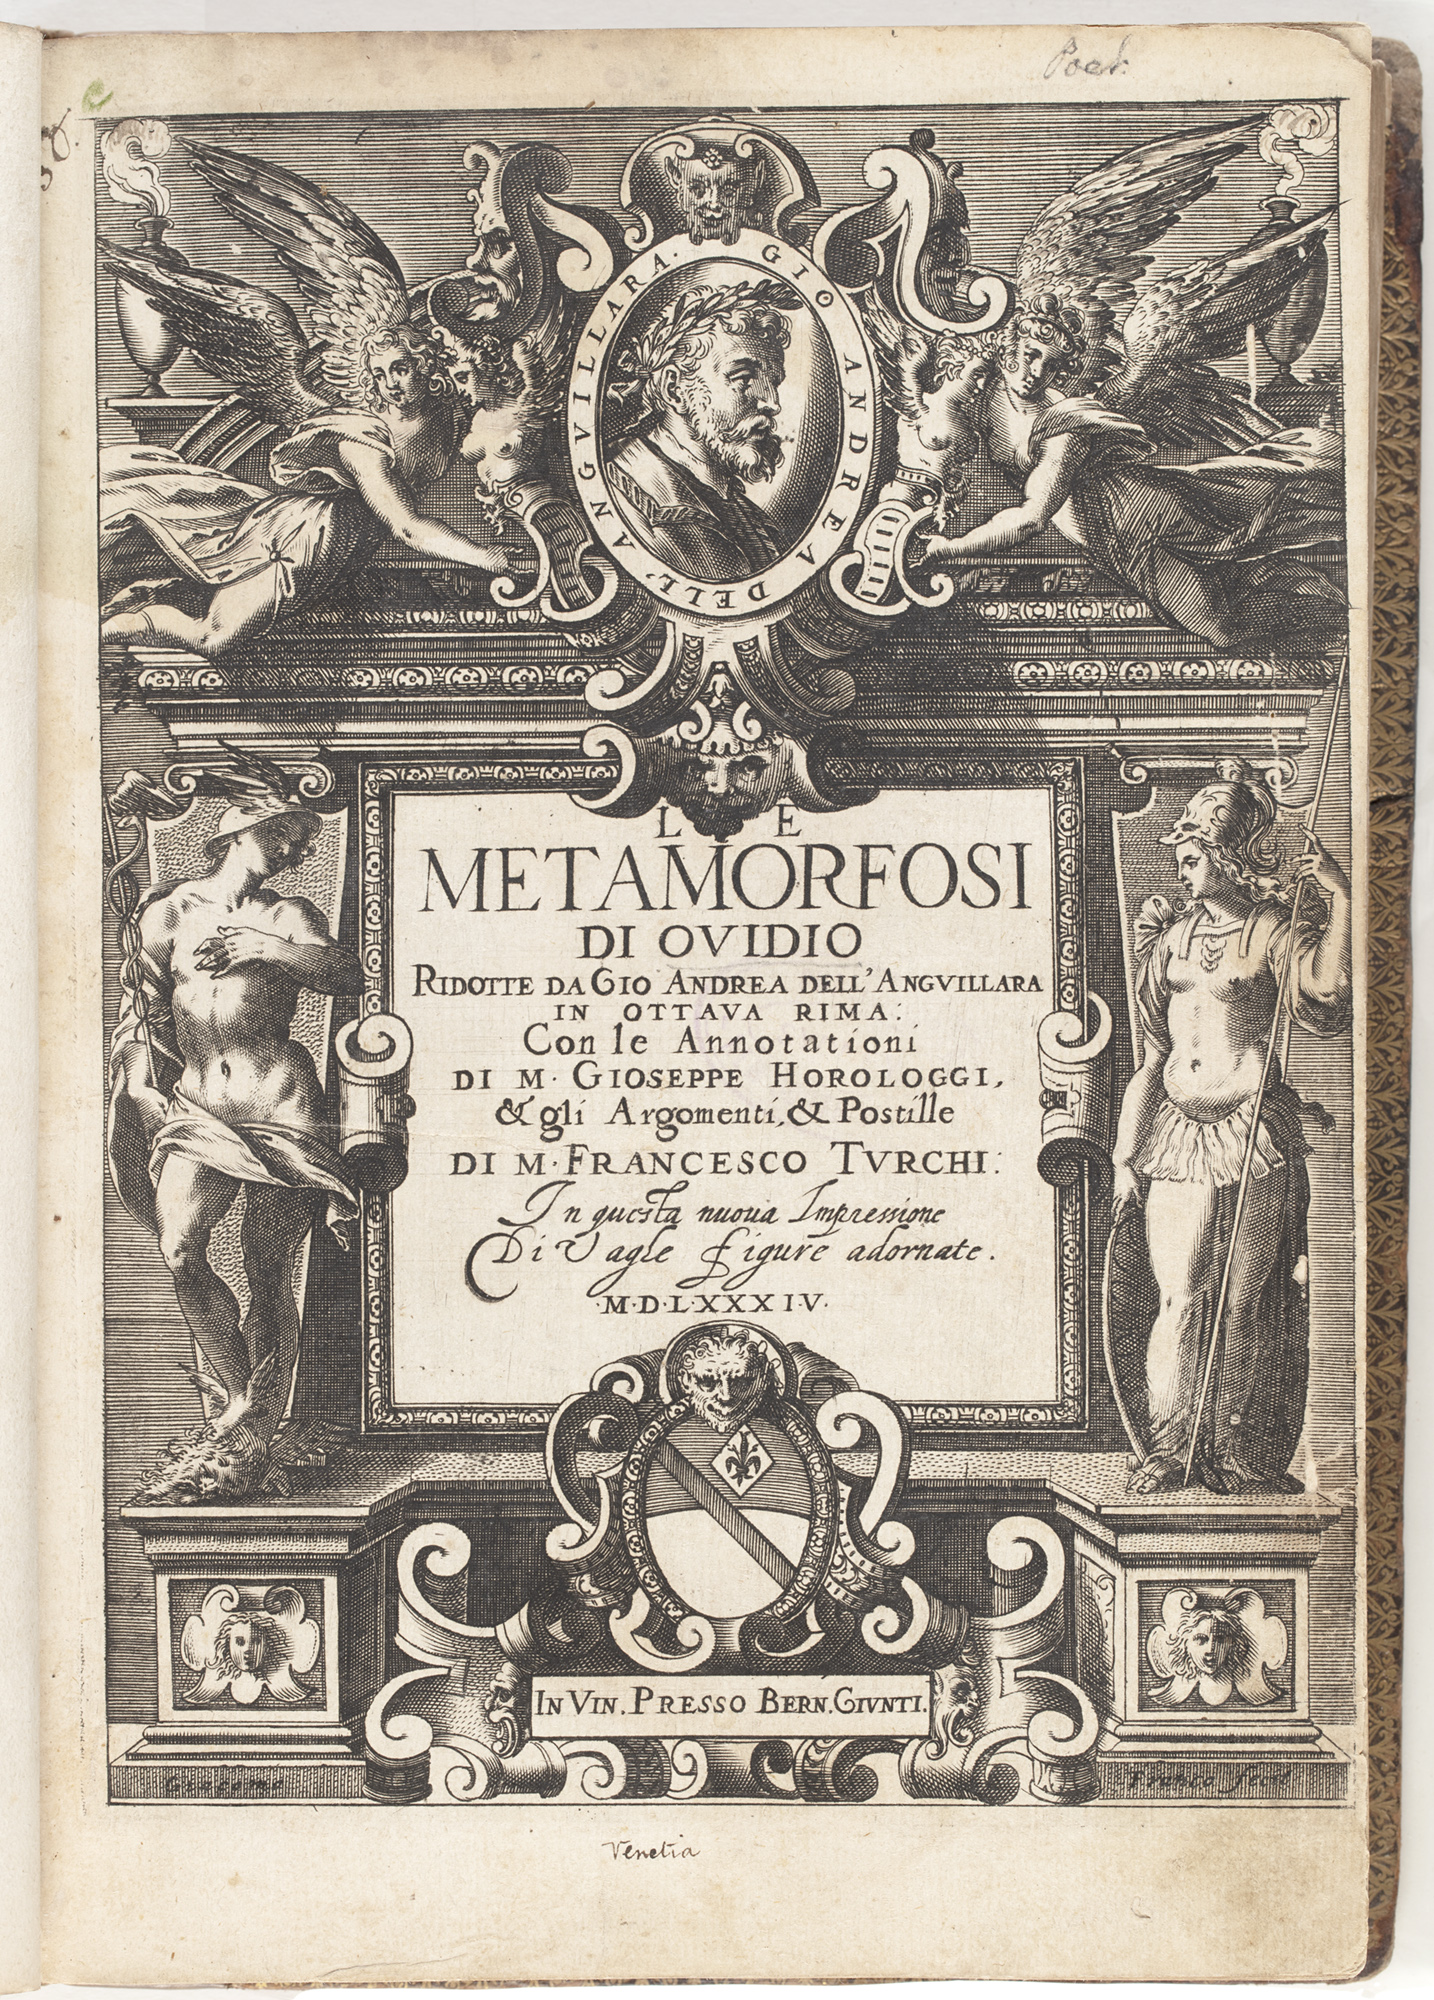 Le metamorfosi di Ovidio, 1584, by Ovid